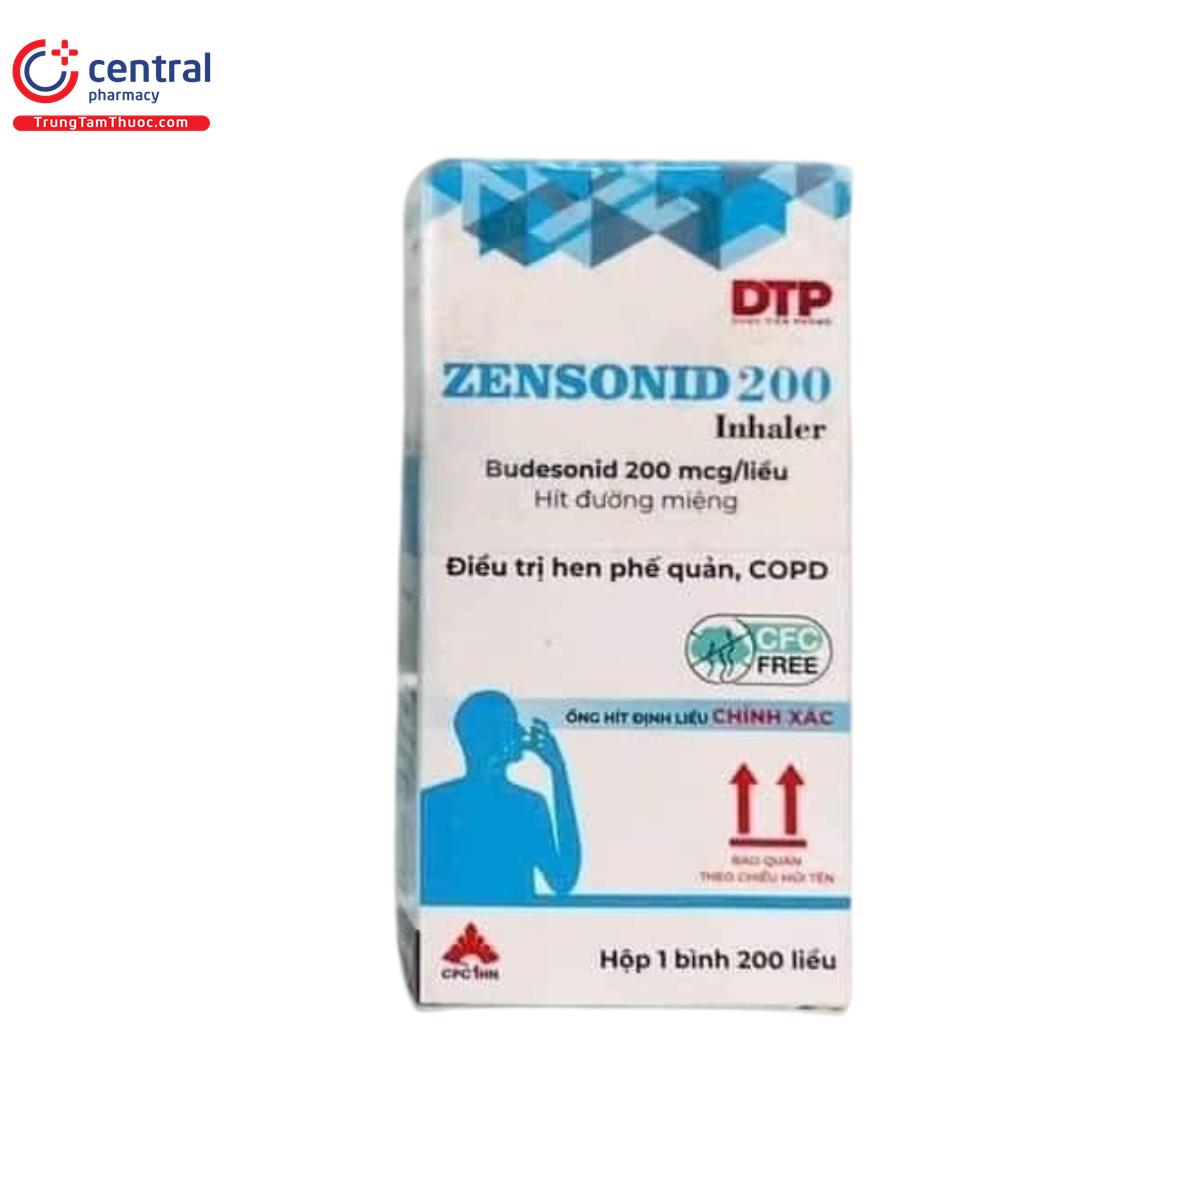 zensonid 200 inhaler 2 N5321